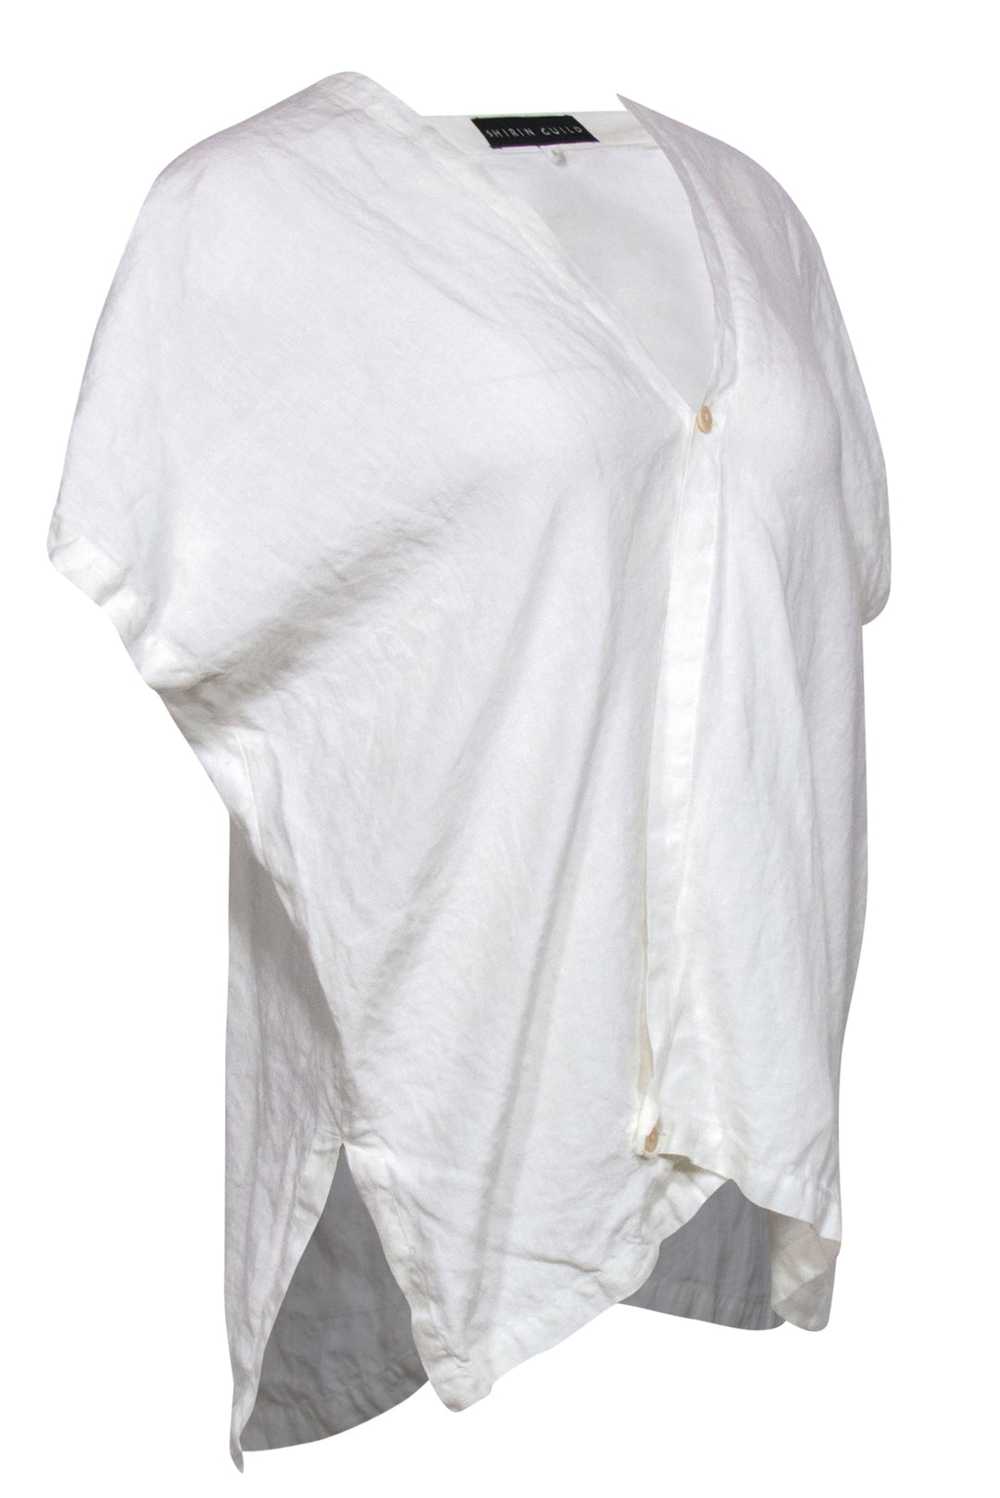 Shirin Guild - White Linen Draped Asymmetric Blou… - image 2